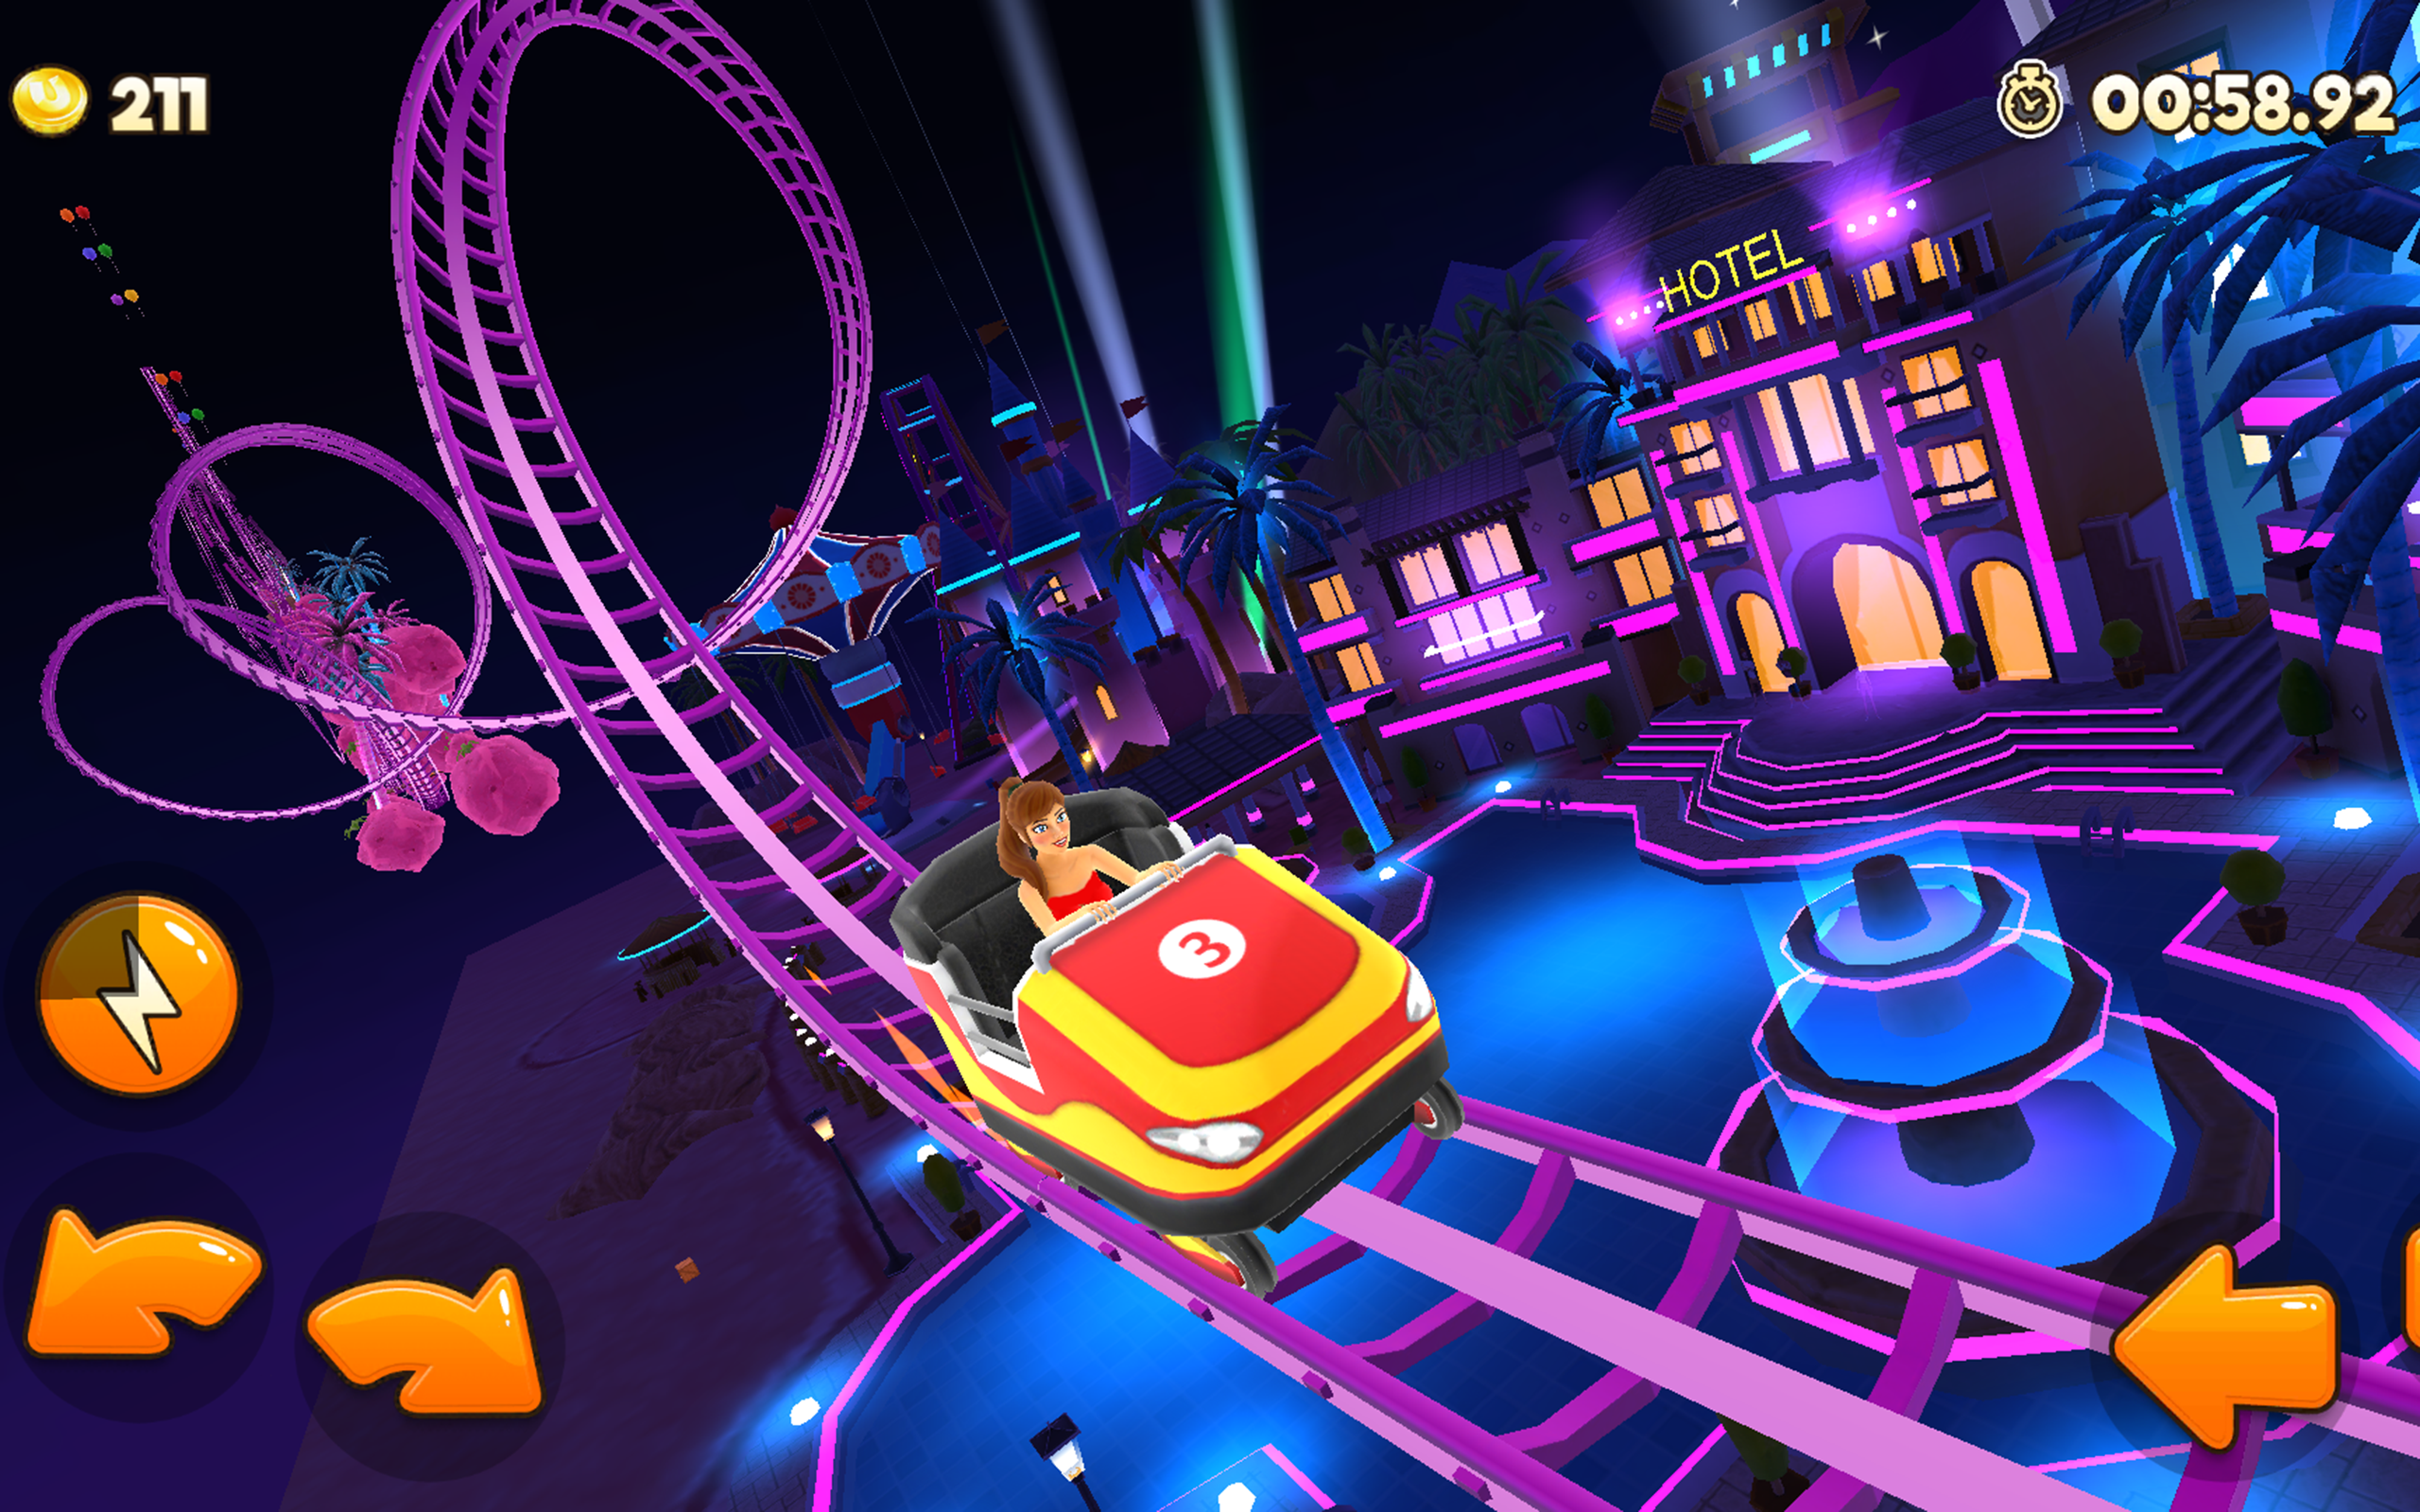 Thrill Rush Theme Park screenshot game